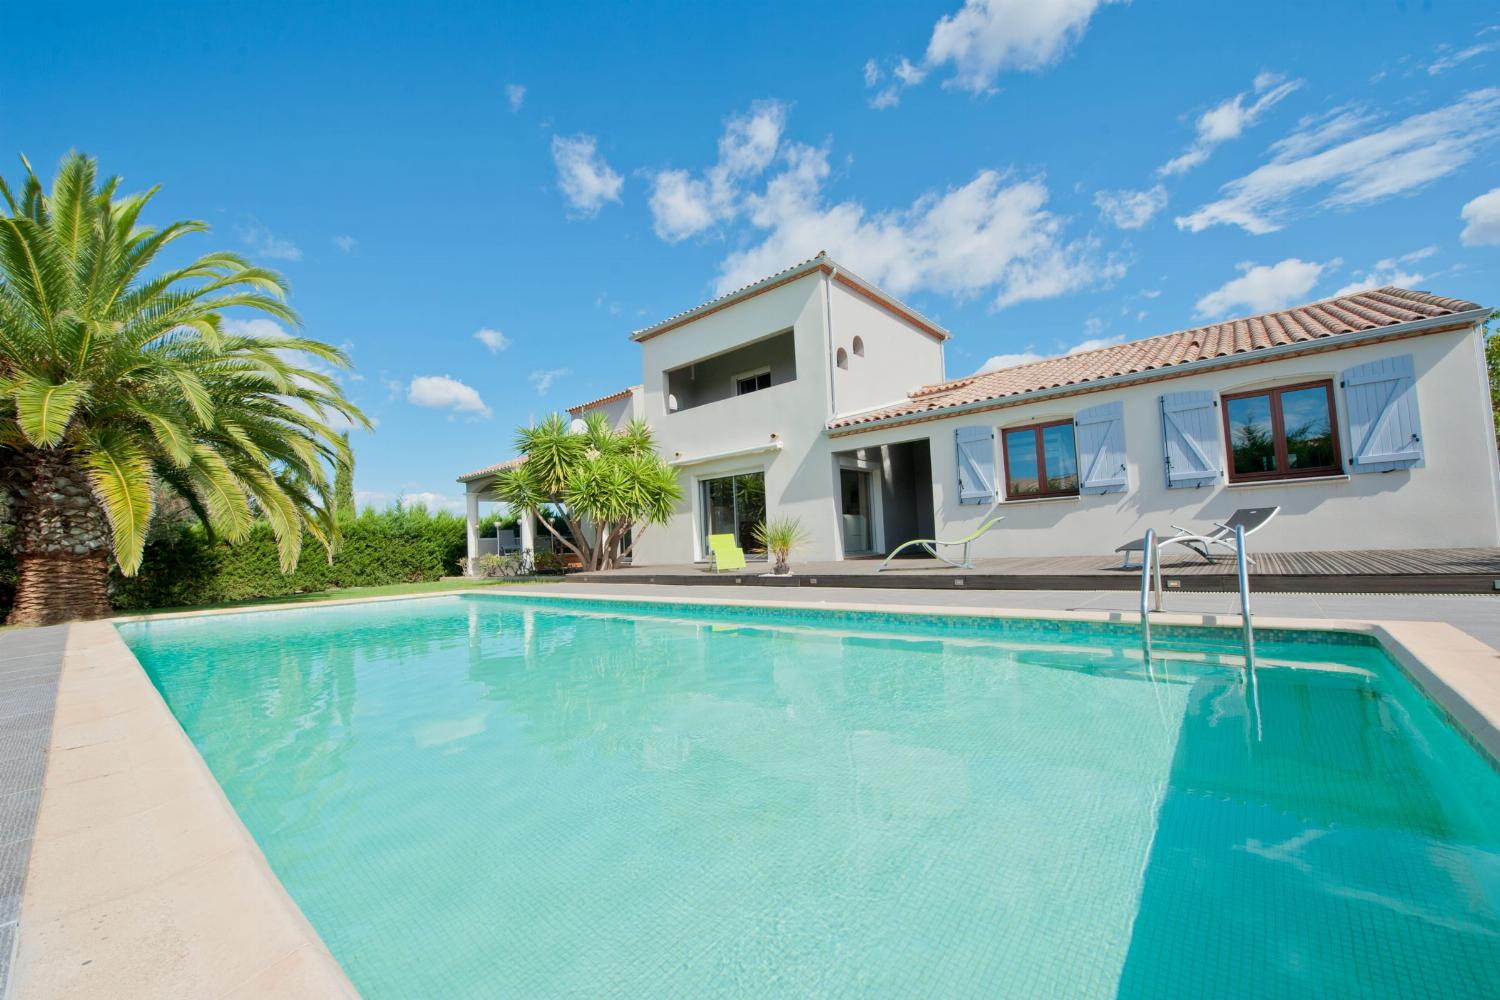 Villa de vacances en Occitanie avec piscine privée chauffée